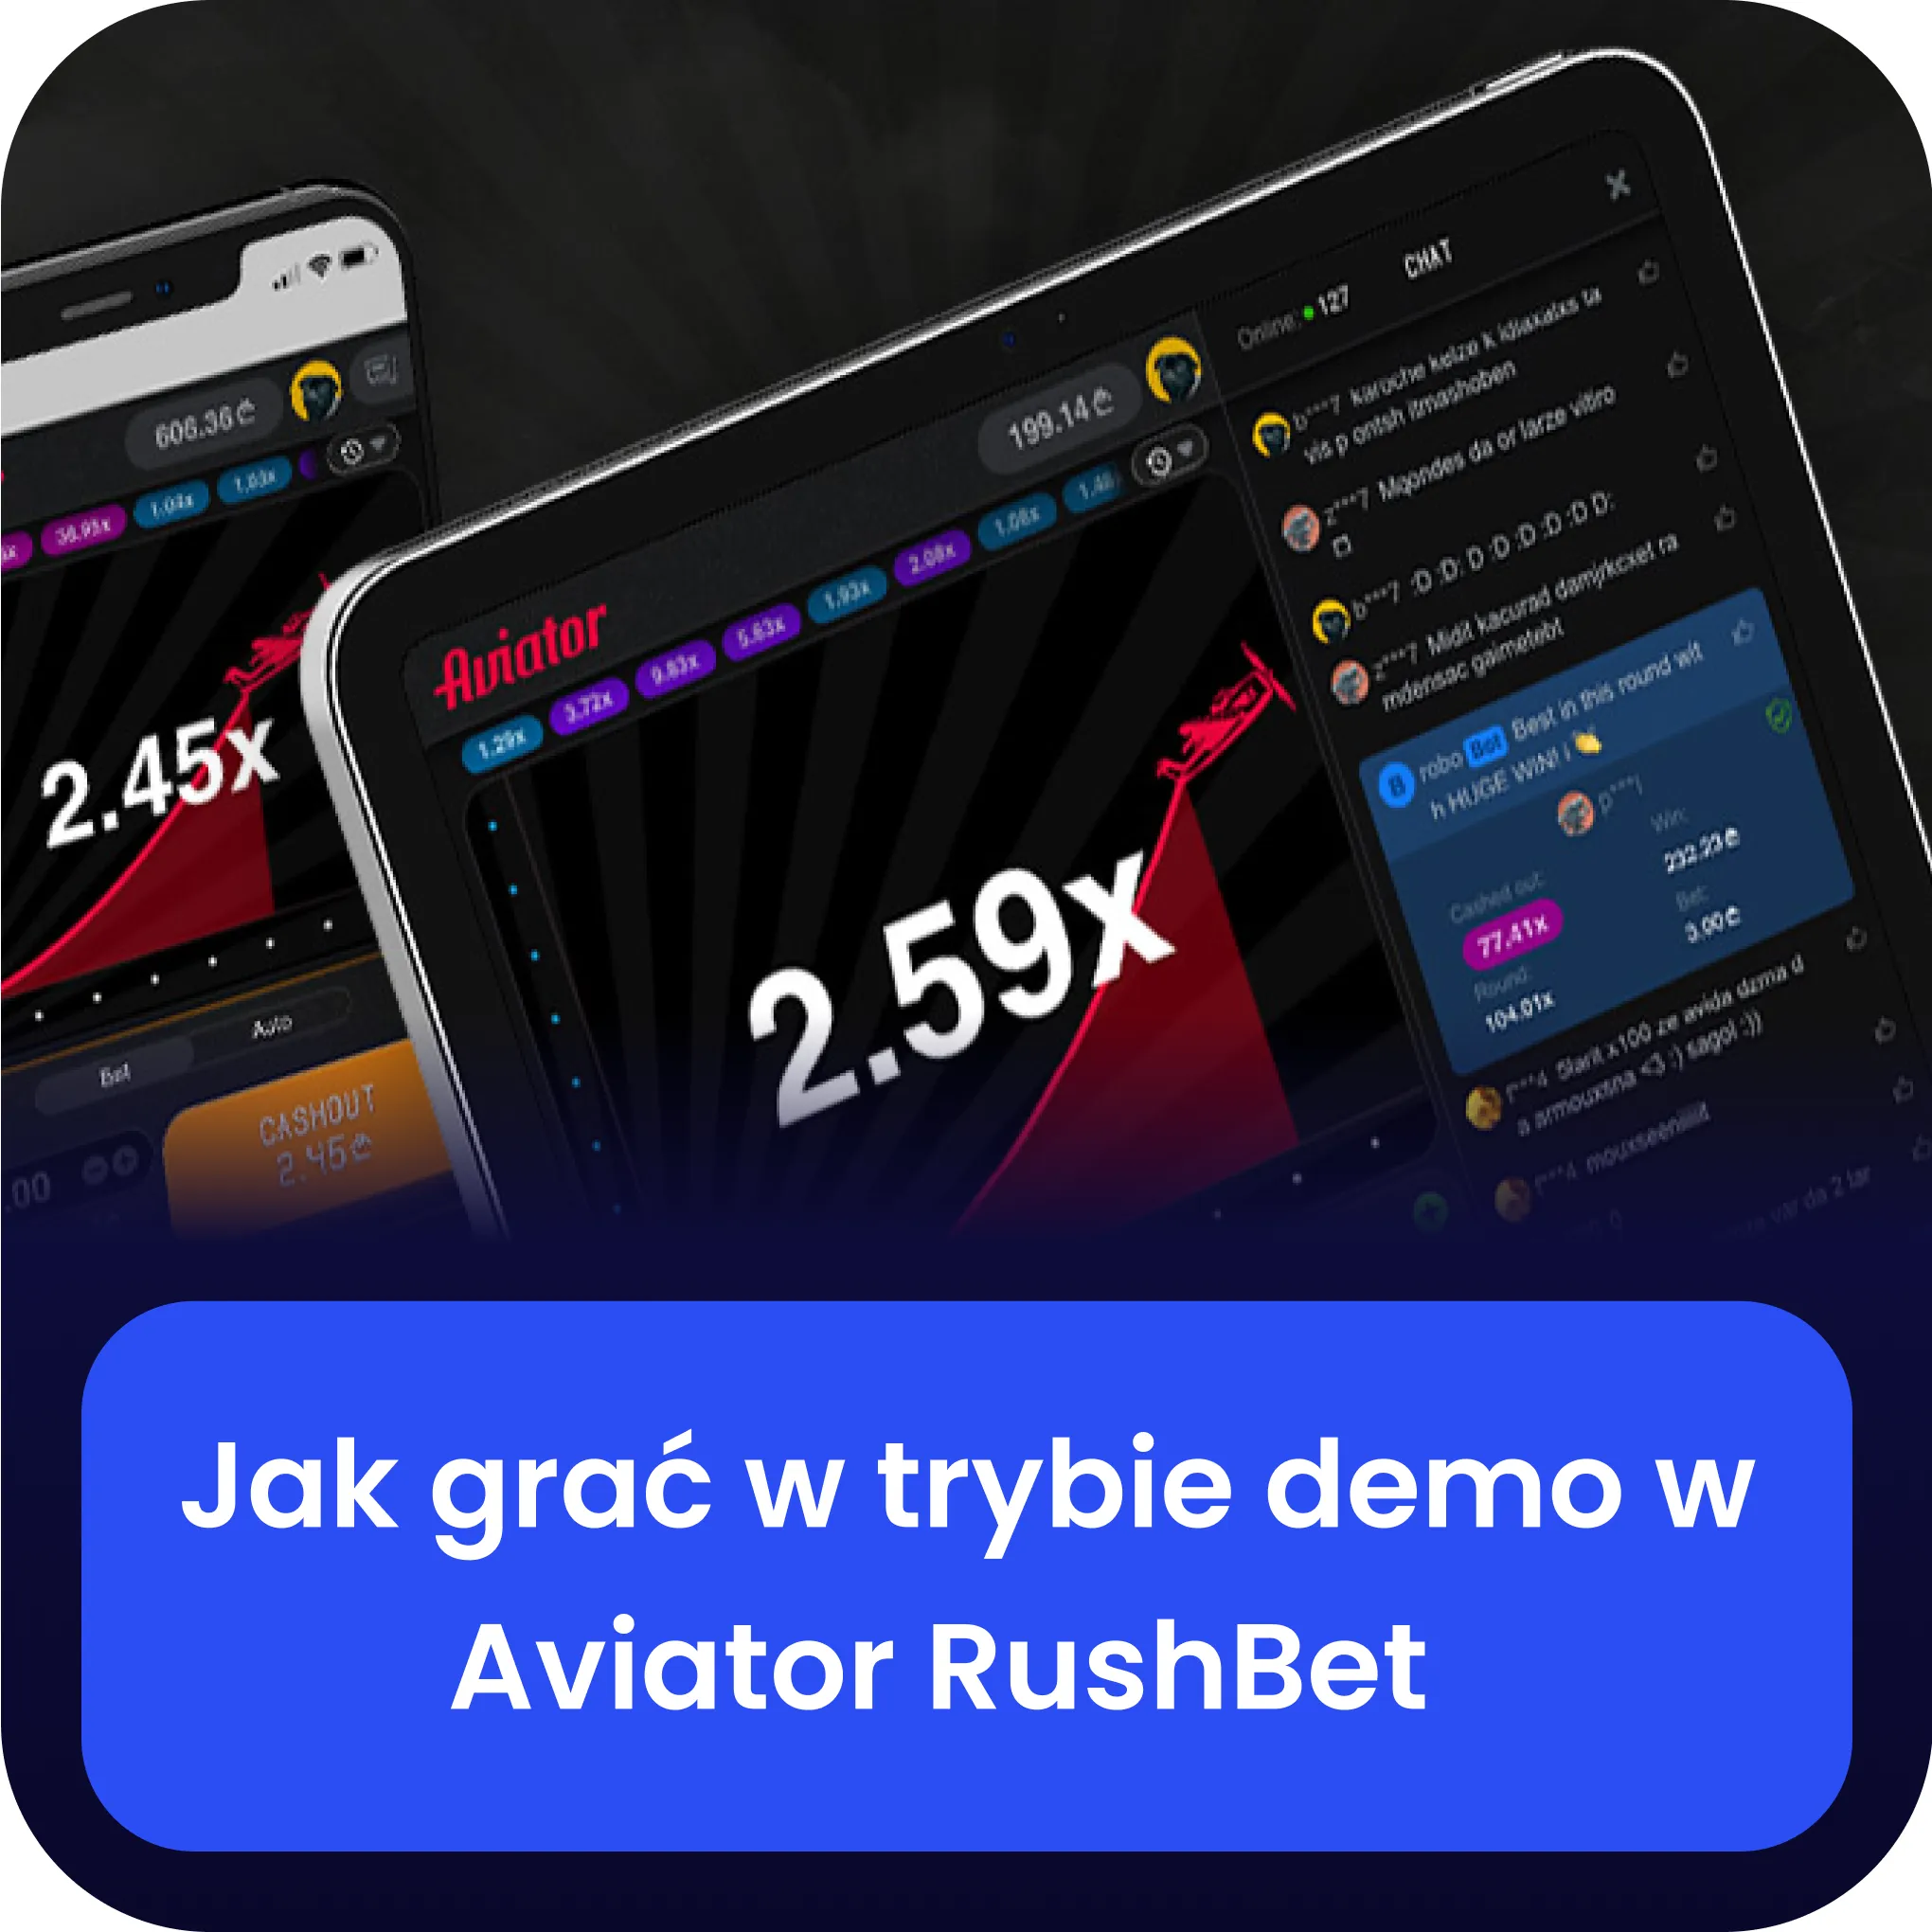 rushbet aviator wersja demo